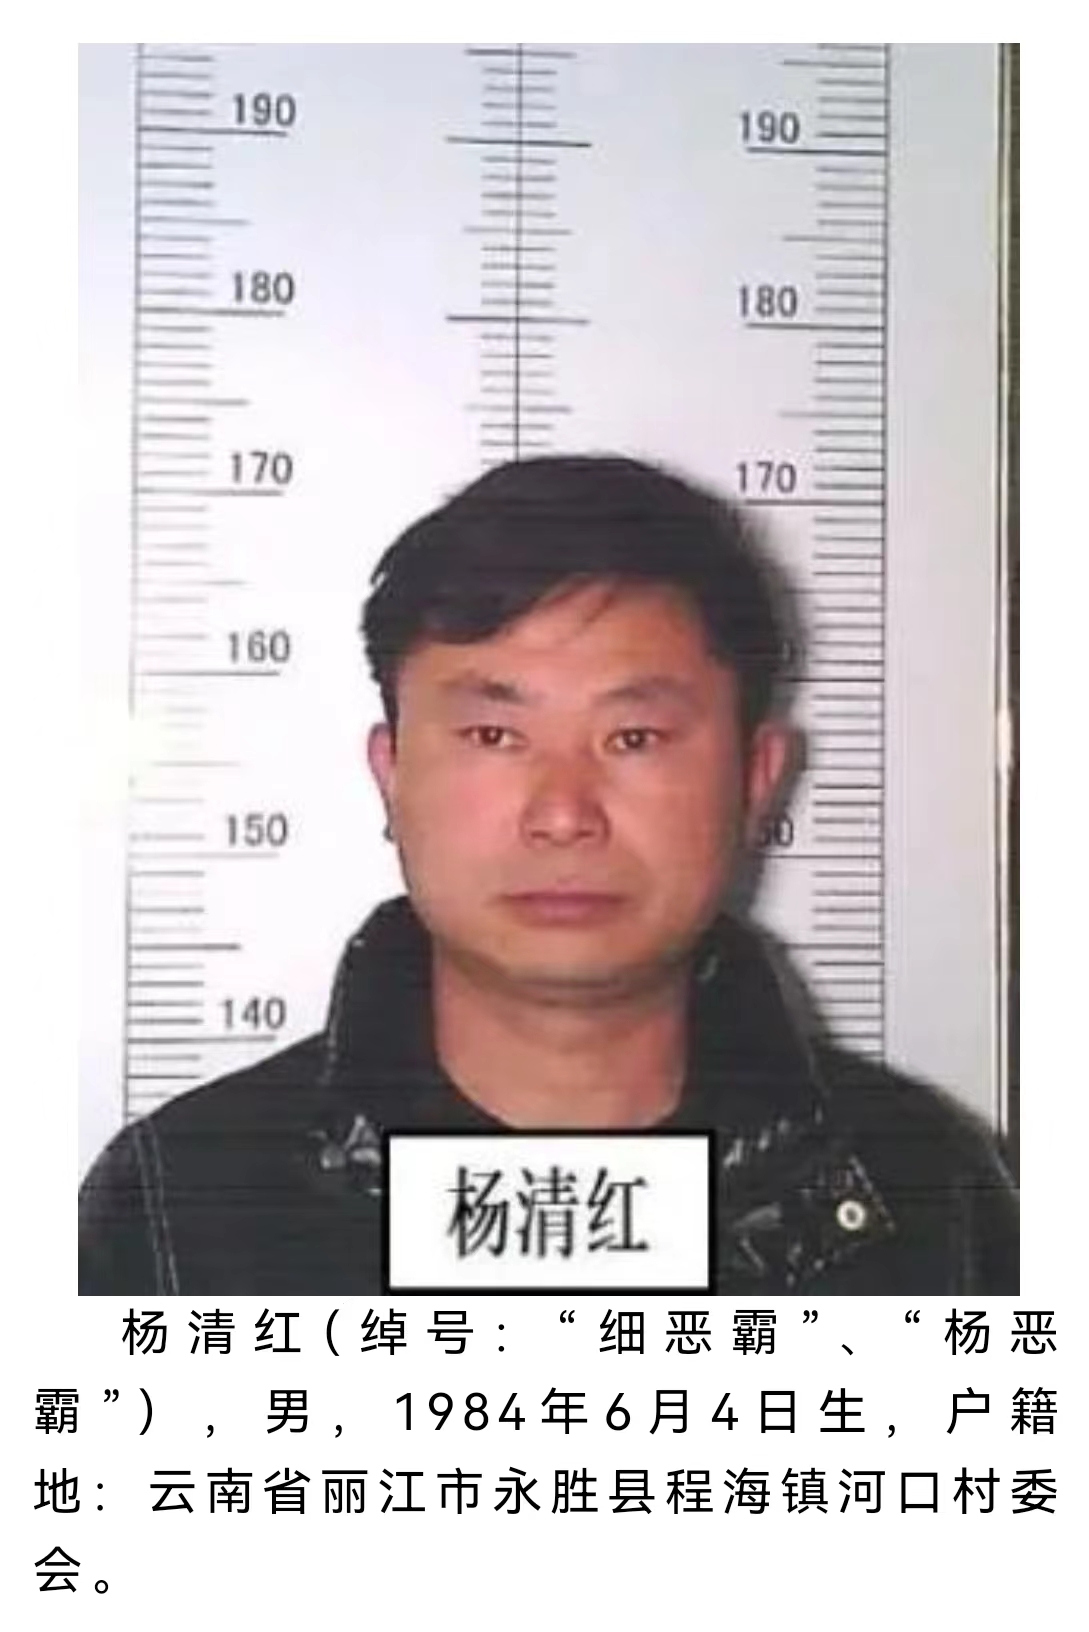 丽江警方公开征集该犯罪团伙犯罪线索 被欺负过的速来举报 (5).jpg